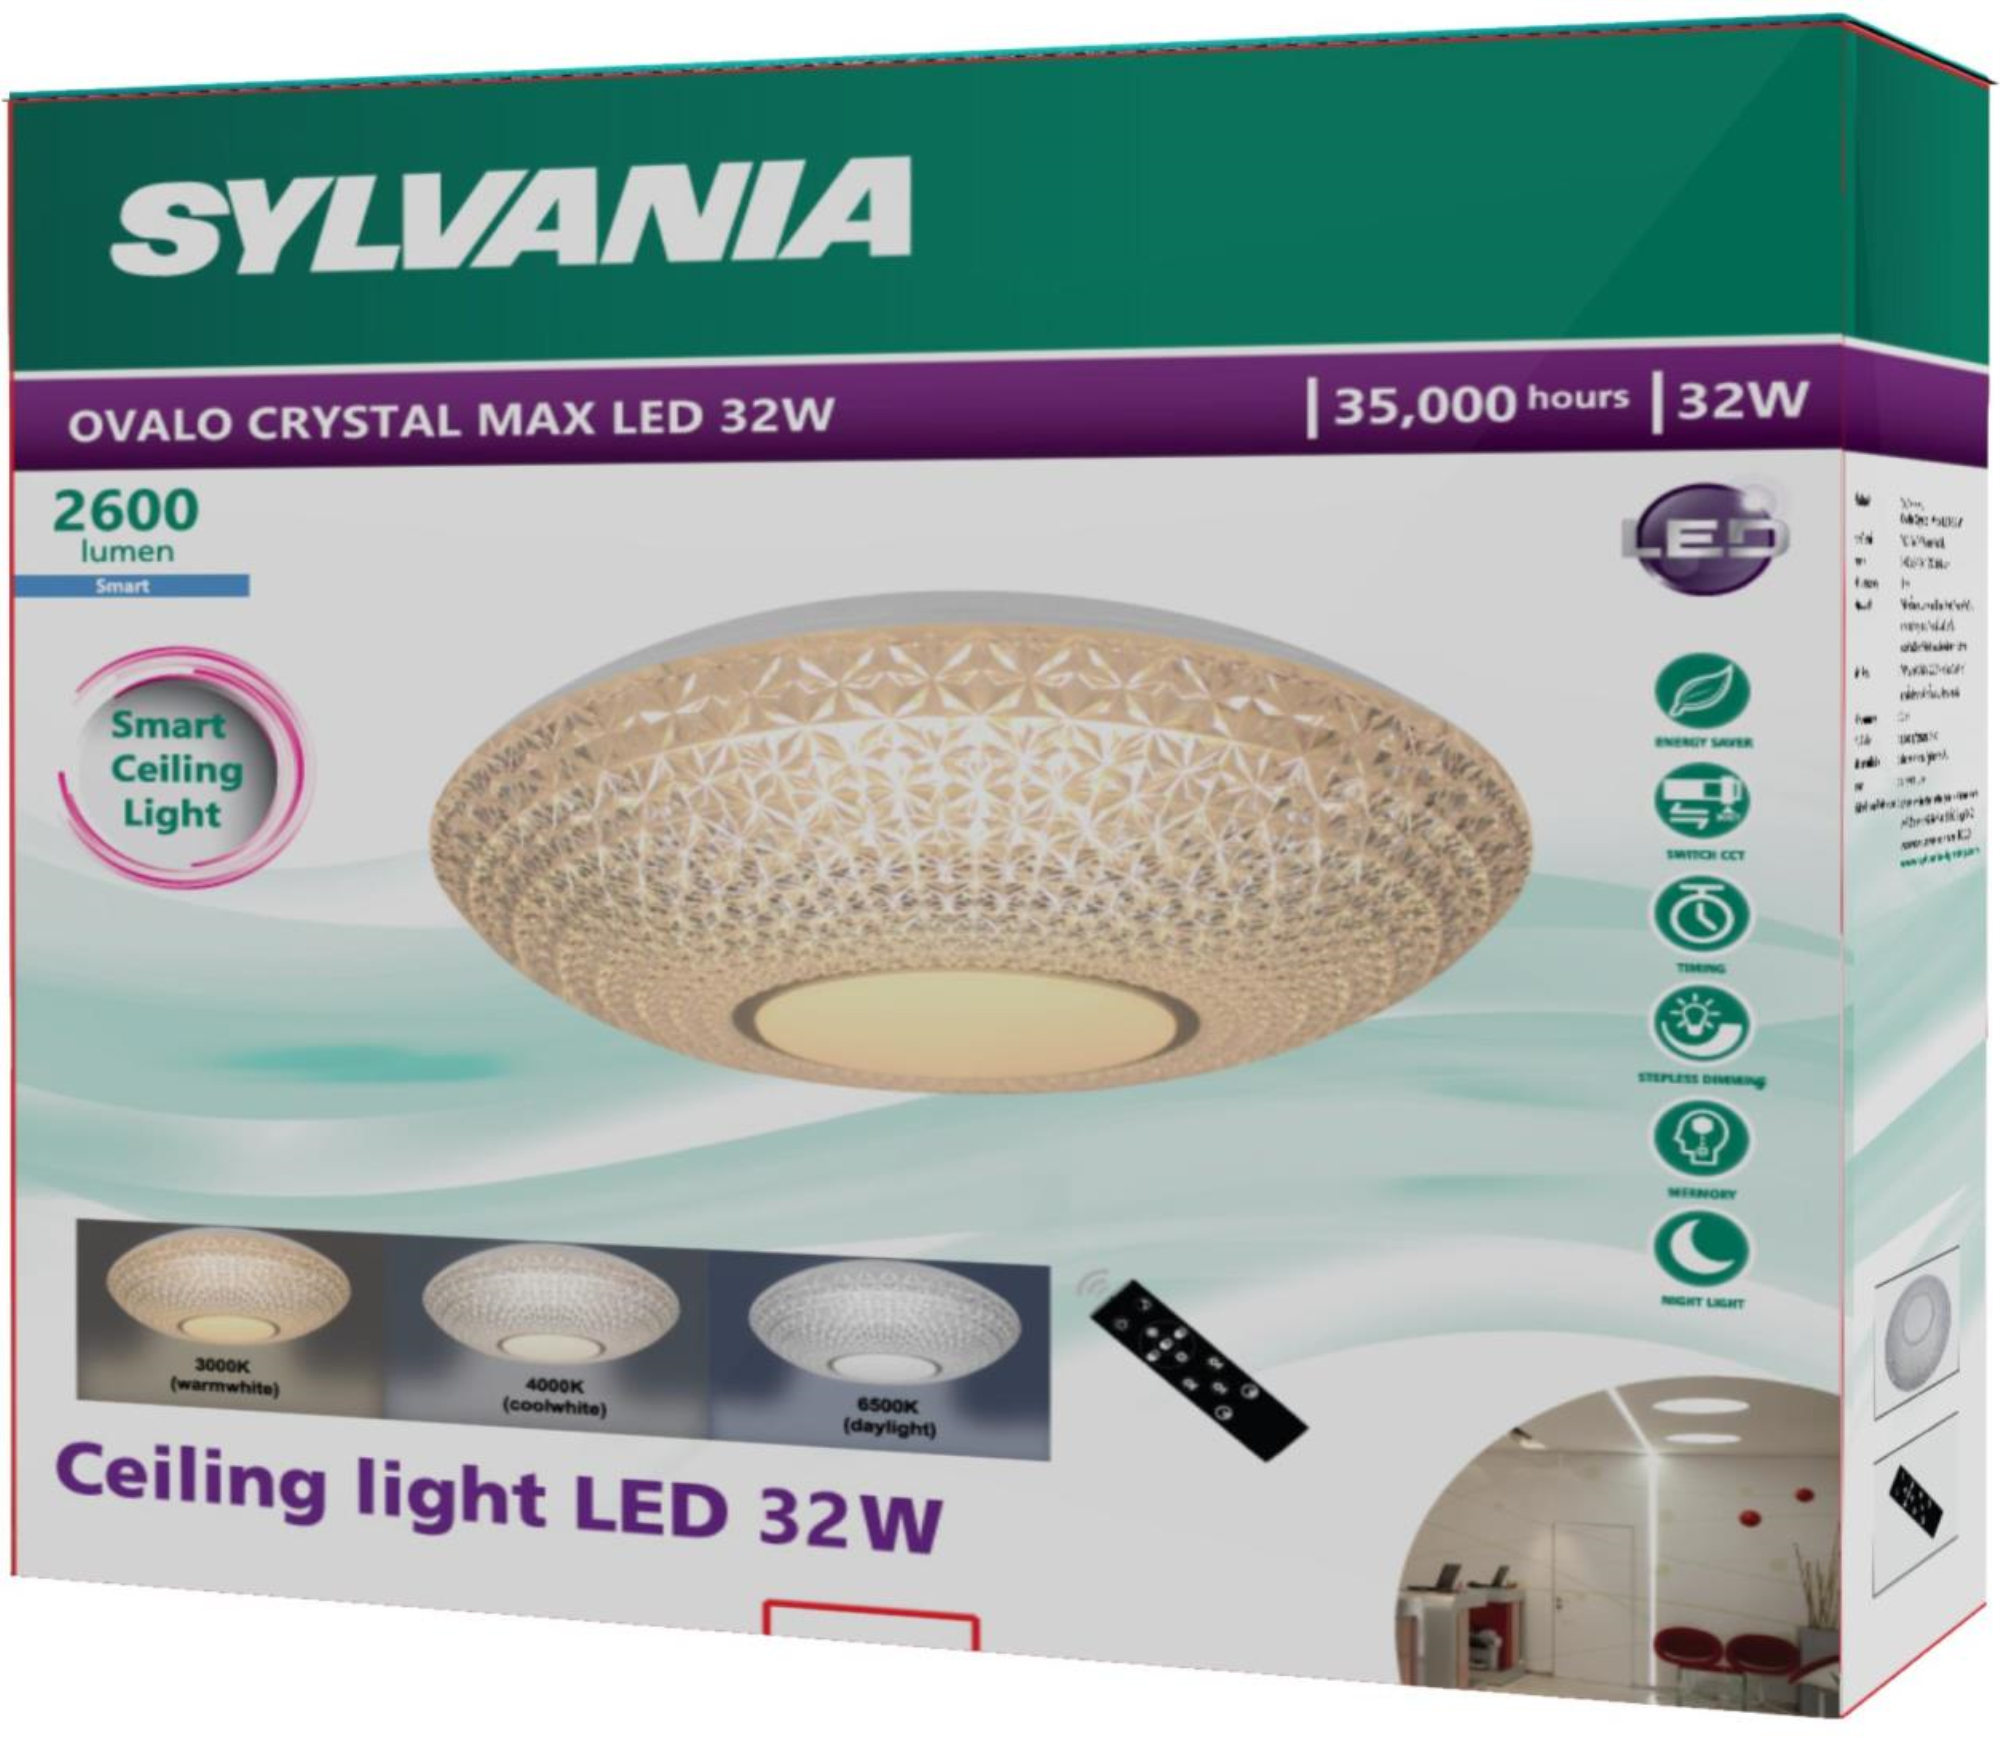  SYLVANIA โคมไฟเพดาน ใช้รีโมท ปรับได้ 3 โทนแสง เดย์ไลท์/คูลไวท์/วอร์มไวท์ Ovalo Crystal Max LED 32W 2600lm